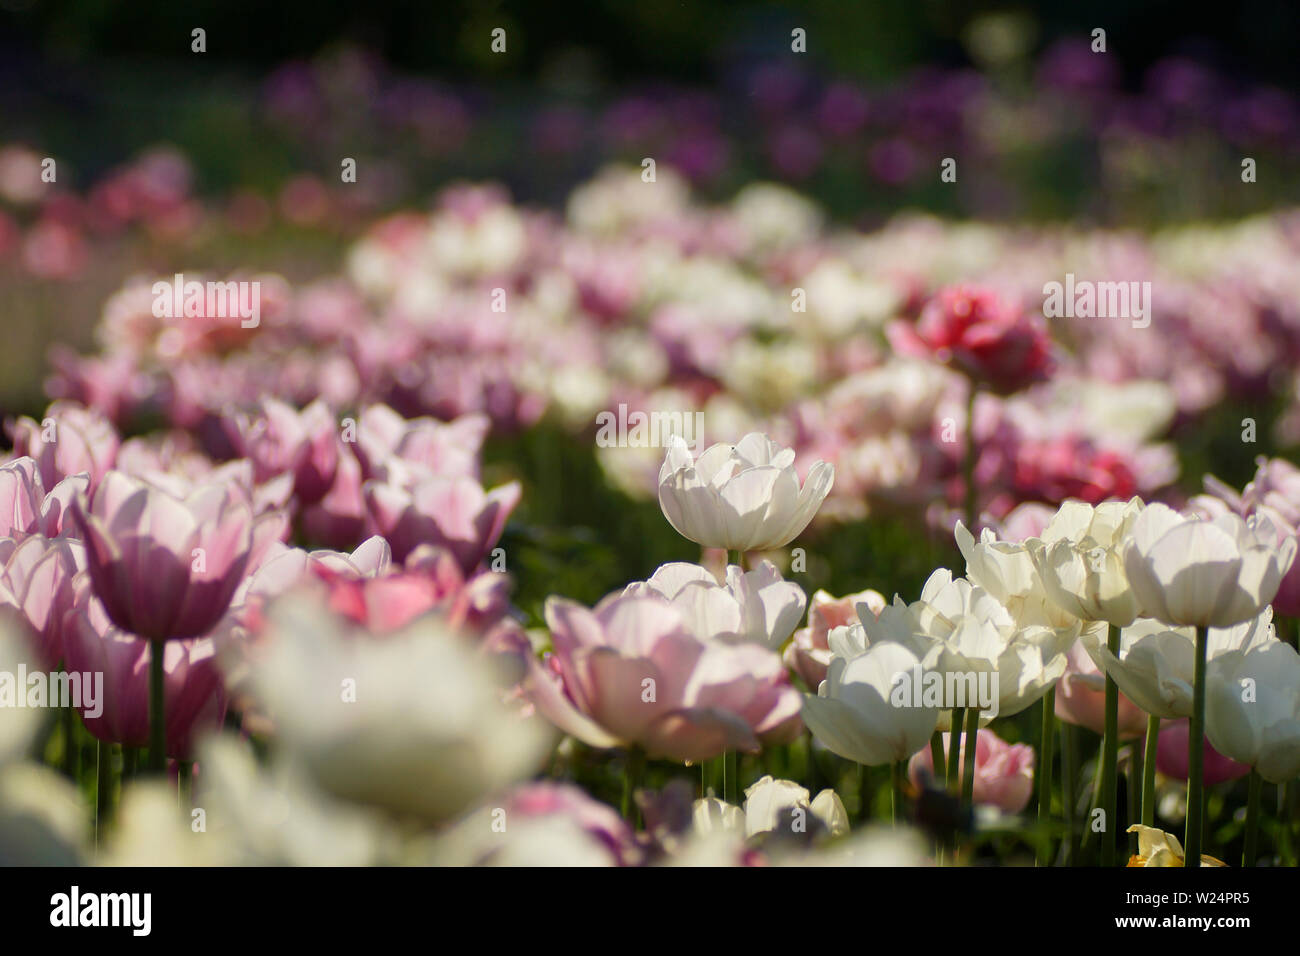 Blumenbarbabietola mit weißen und rosa Tulpen Foto Stock